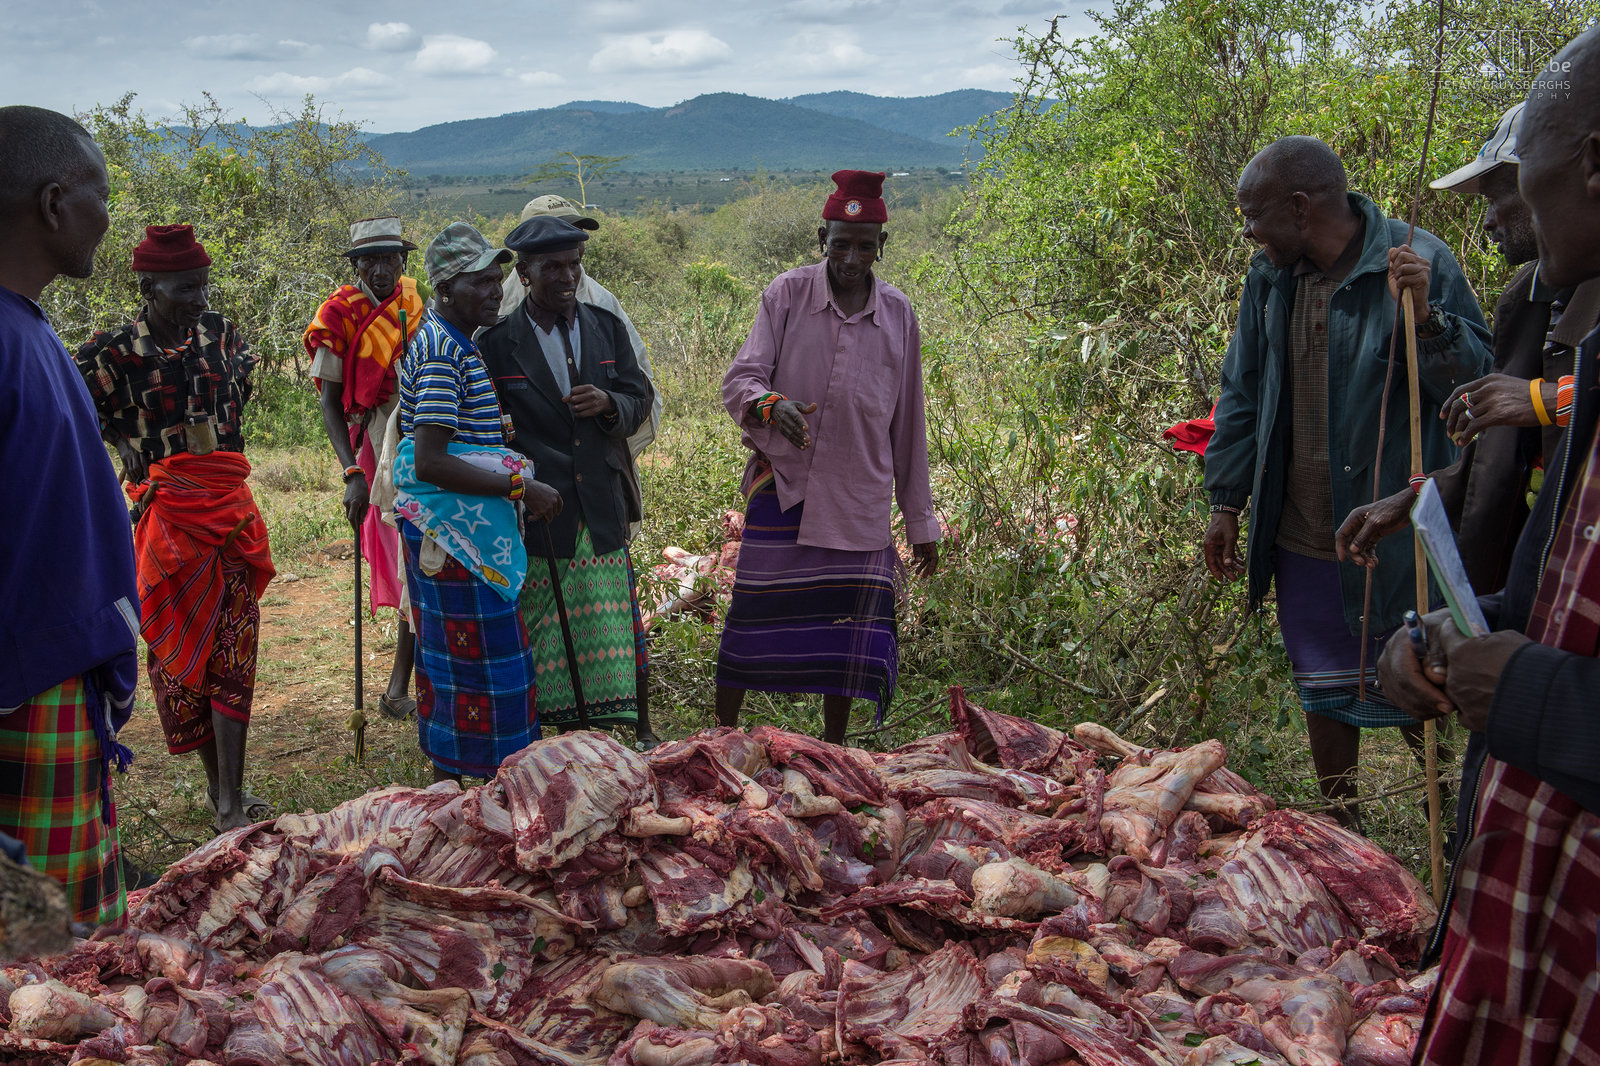 Kisima - Samburu lmuget - Mzee met verzameling vlees Al het vlees wordt verzameld door de mzee (oudere mannen) en ze verdelen dit tussen zichzelf, de morans (krijgers) en de vrouwen en kinderen. Stefan Cruysberghs